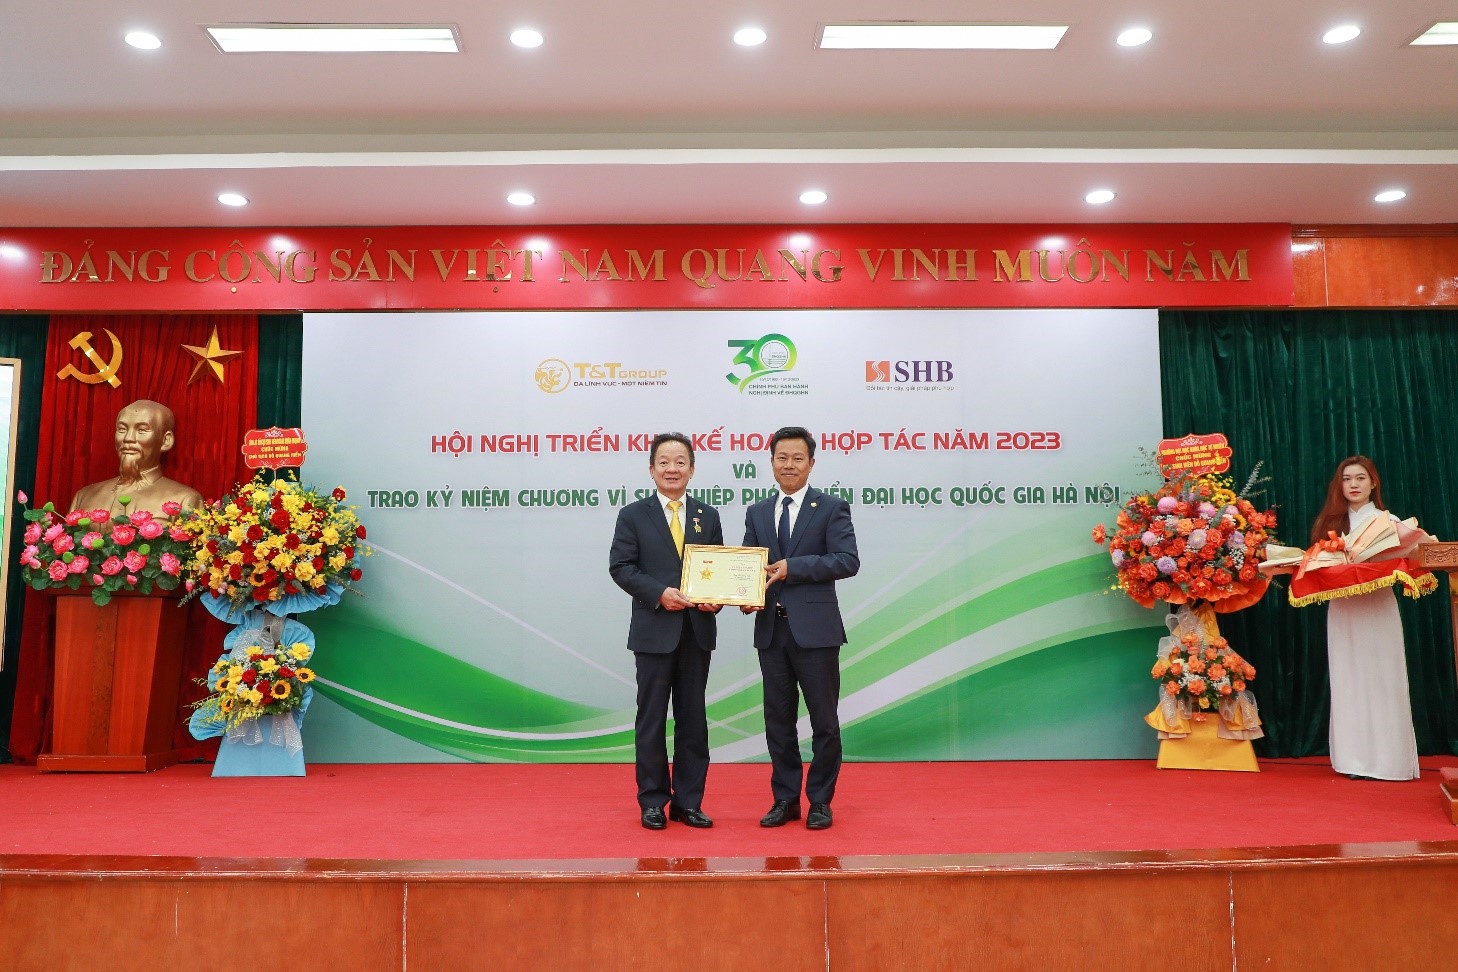 Kinh tế - Doanh nhân Đỗ Quang Hiển nhận kỷ niệm chương vì sự nghiệp phát triển Đại học Quốc gia Hà Nội